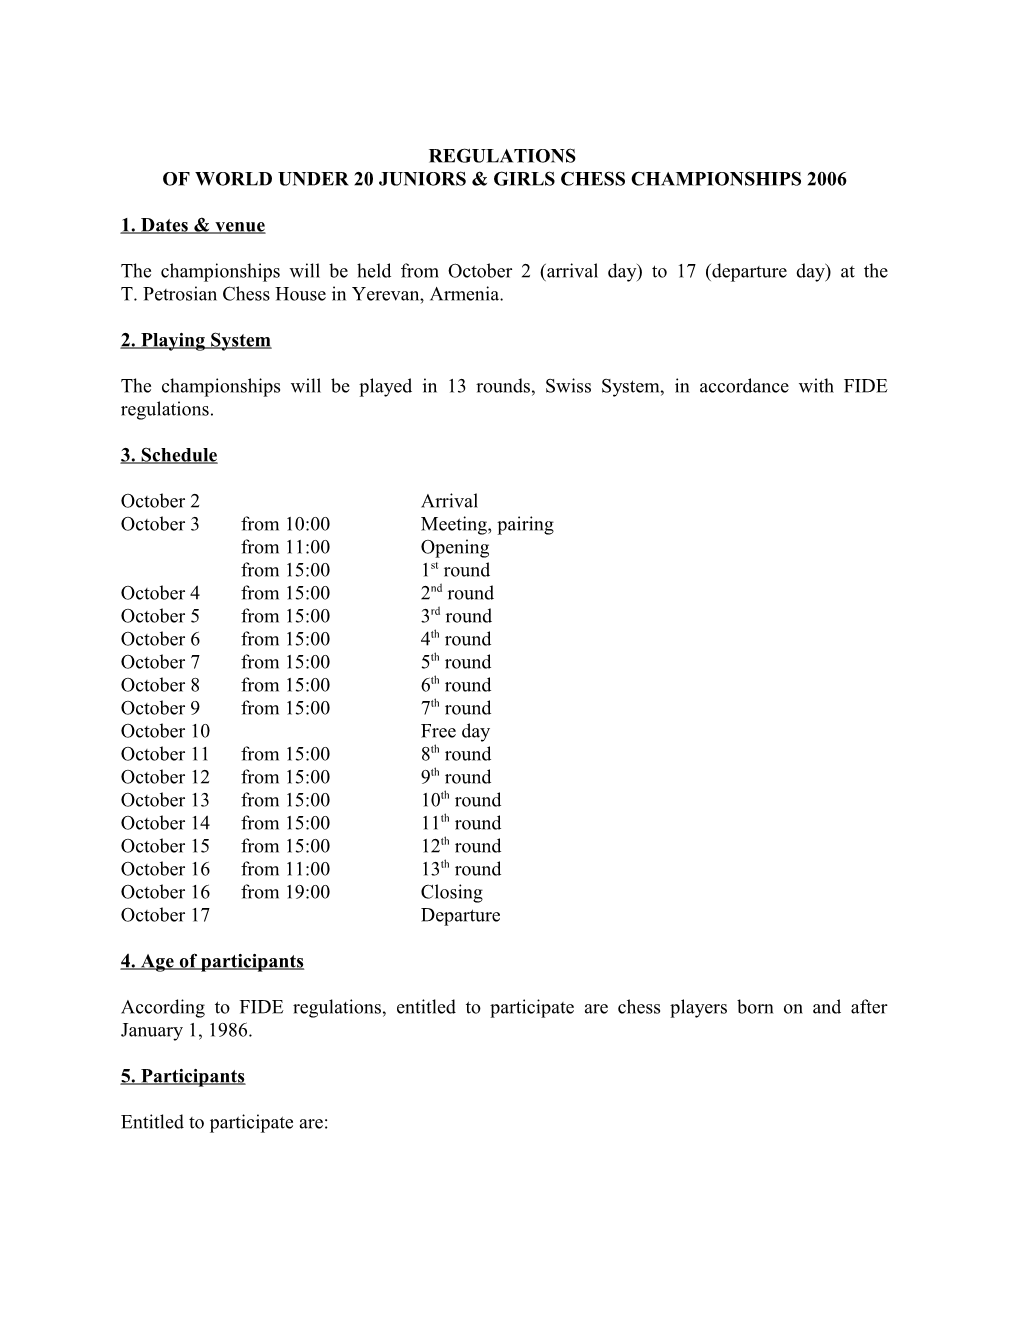 Of World Under 20 Juniors & Girls Chess Championships 2006